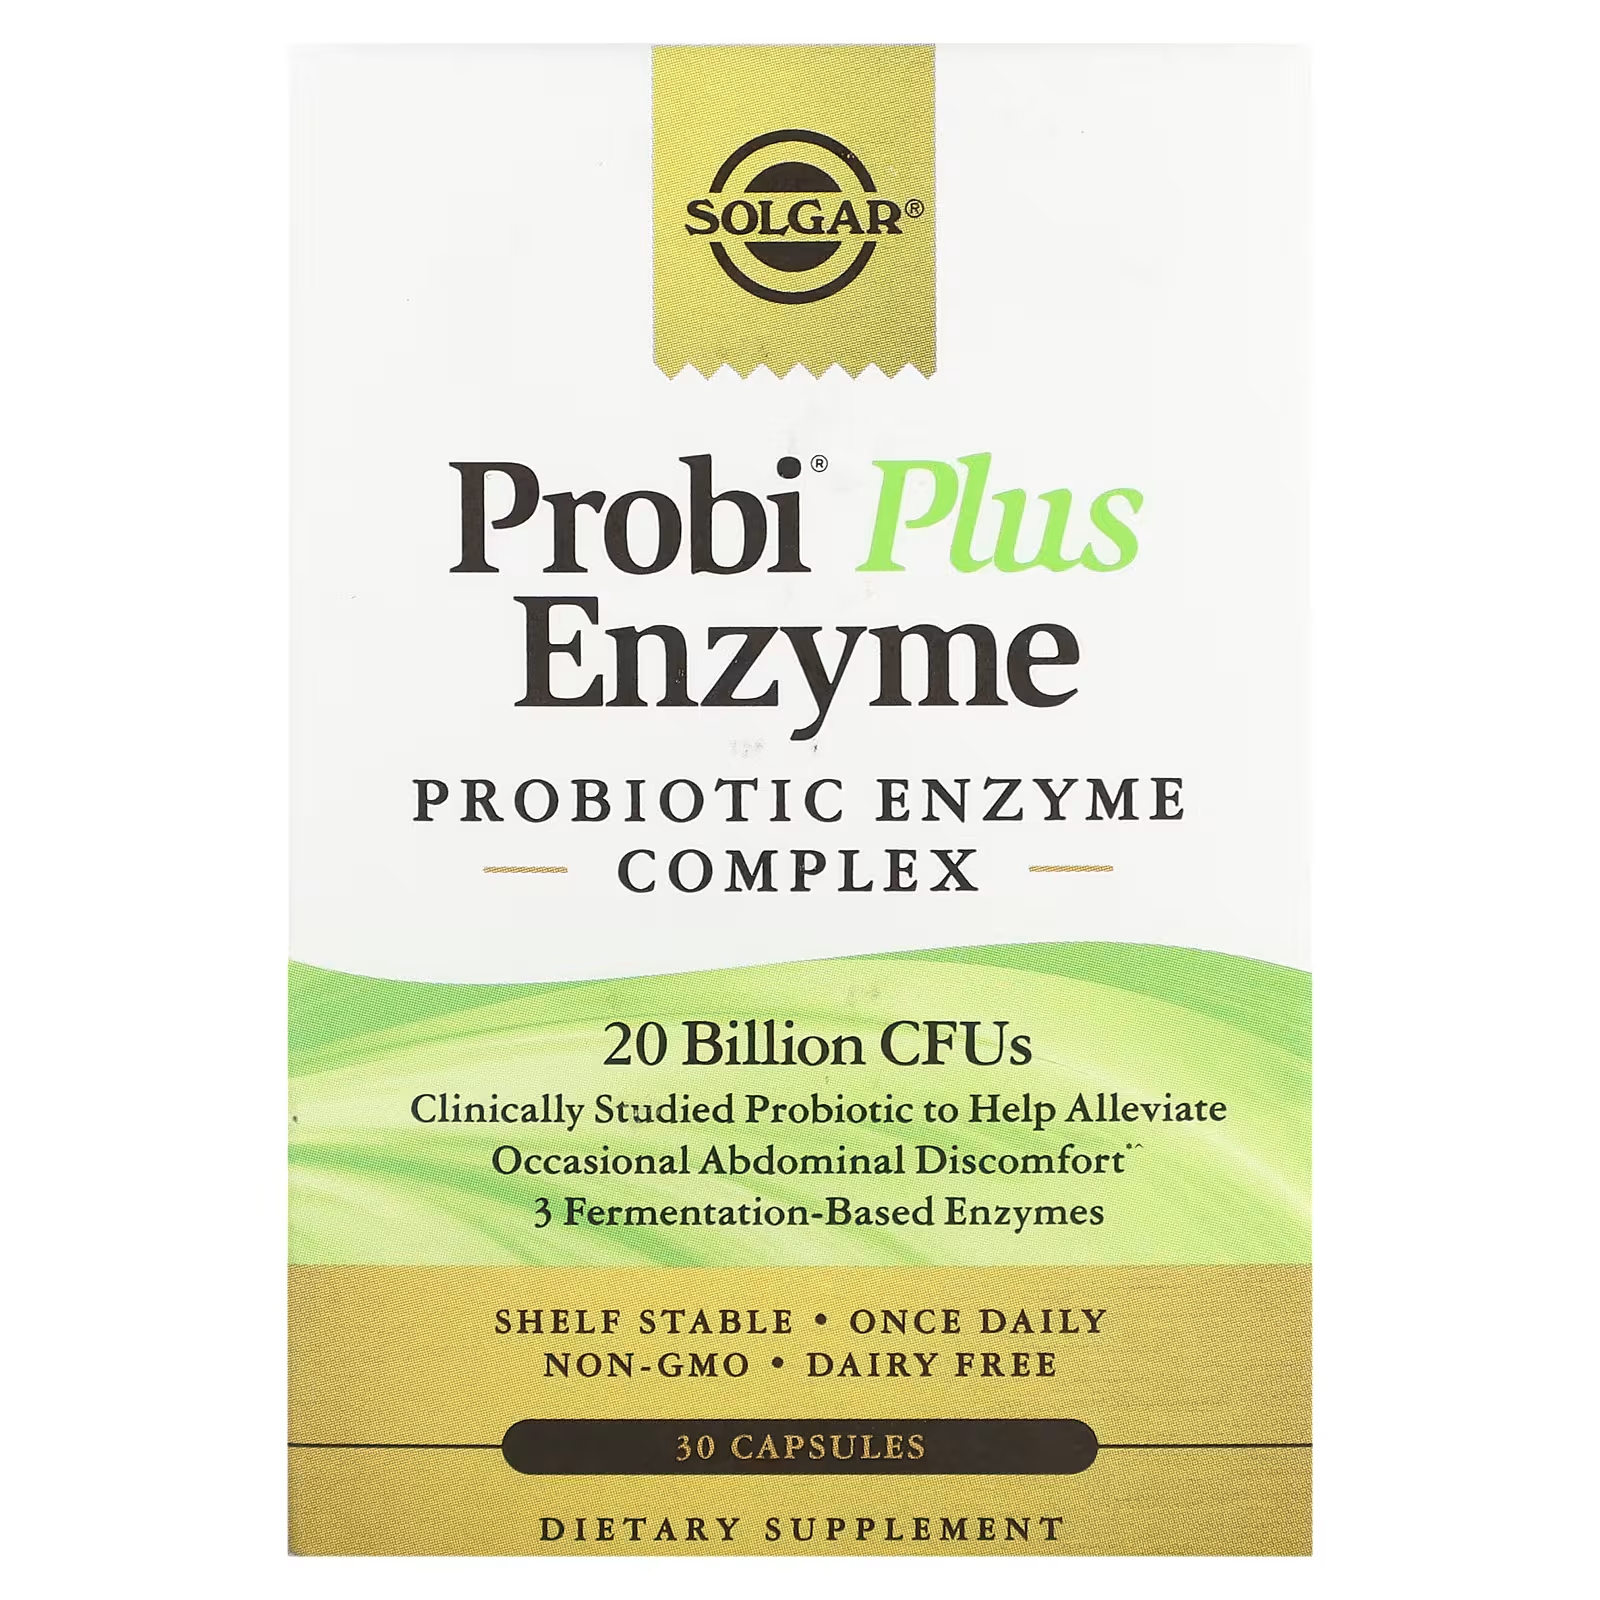 Пробиотический ферментный комплекс Solgar Probi Plus Enzyme, 30 капсул комплекс solgar sleep 30 капсул